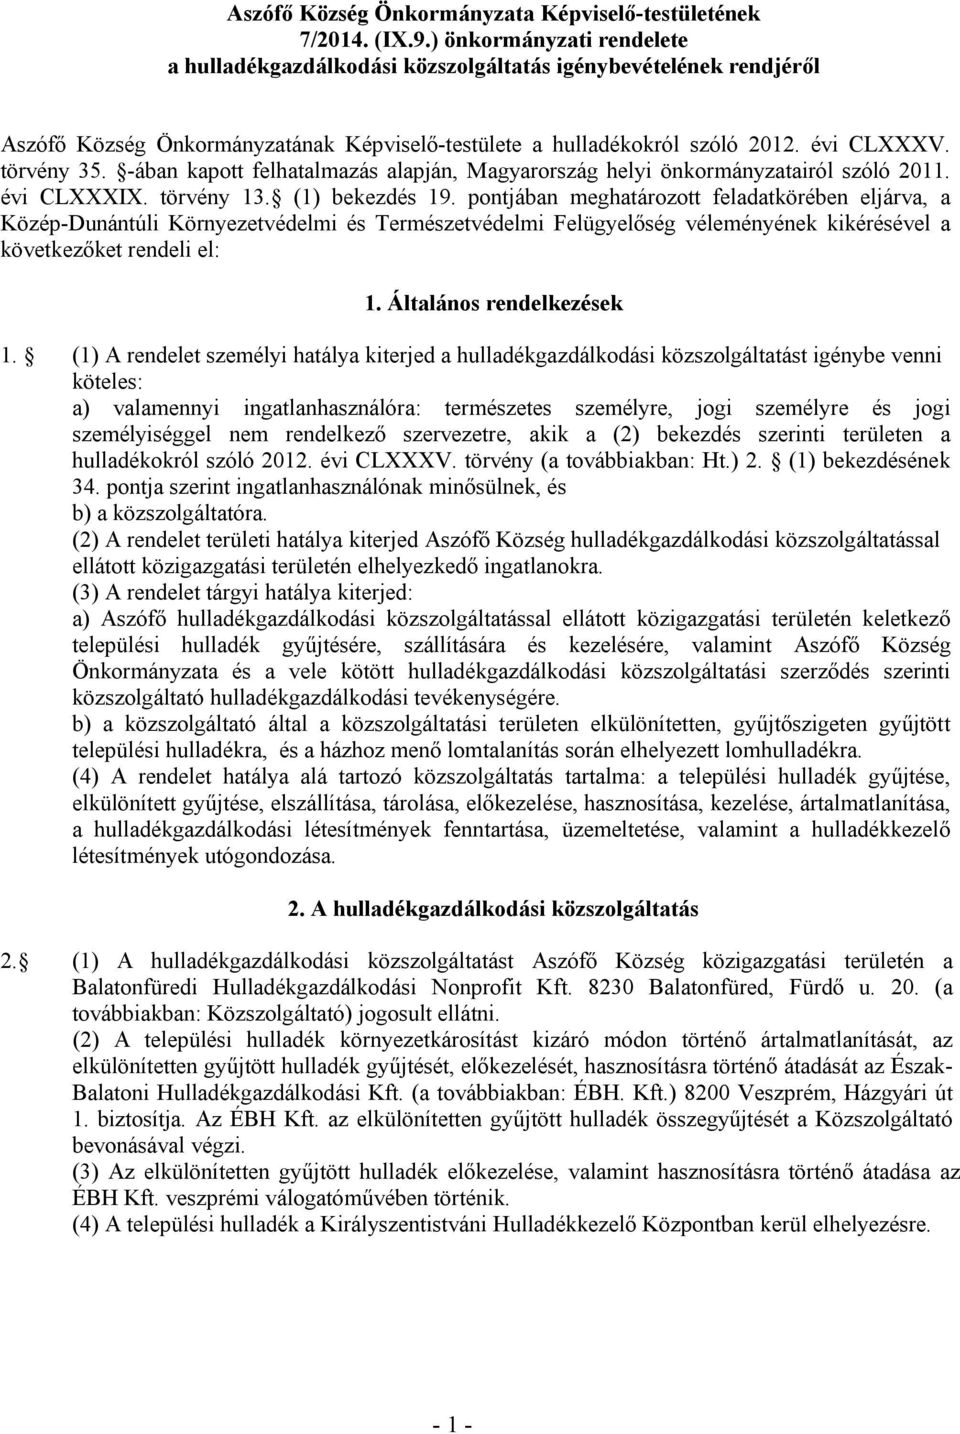 -ában kapott felhatalmazás alapján, Magyarország helyi önkormányzatairól szóló 2011. évi CLXXXIX. törvény 13. (1) bekezdés 19.